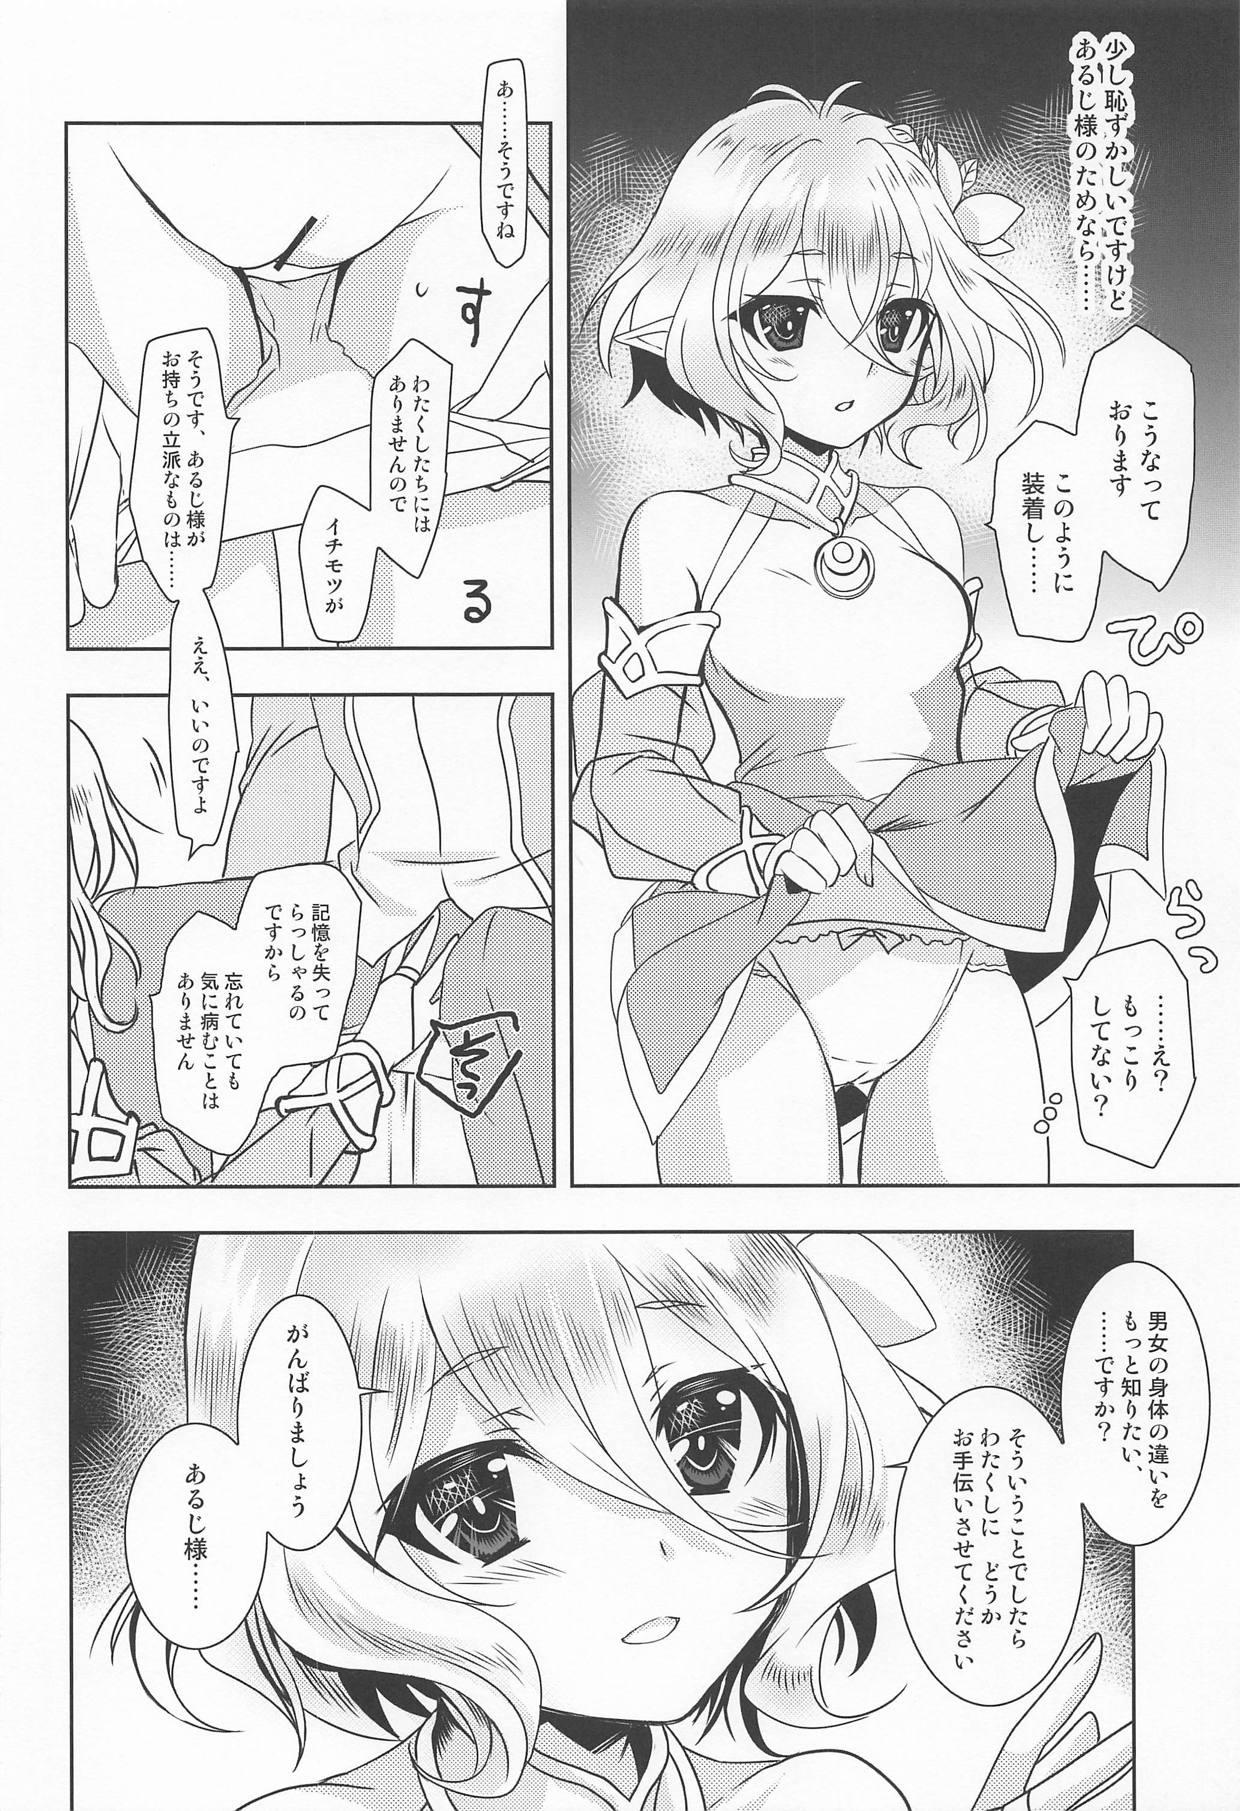 Duro Aruji-sama ni Naisho no Memory Piece - Princess connect 8teen - Page 5